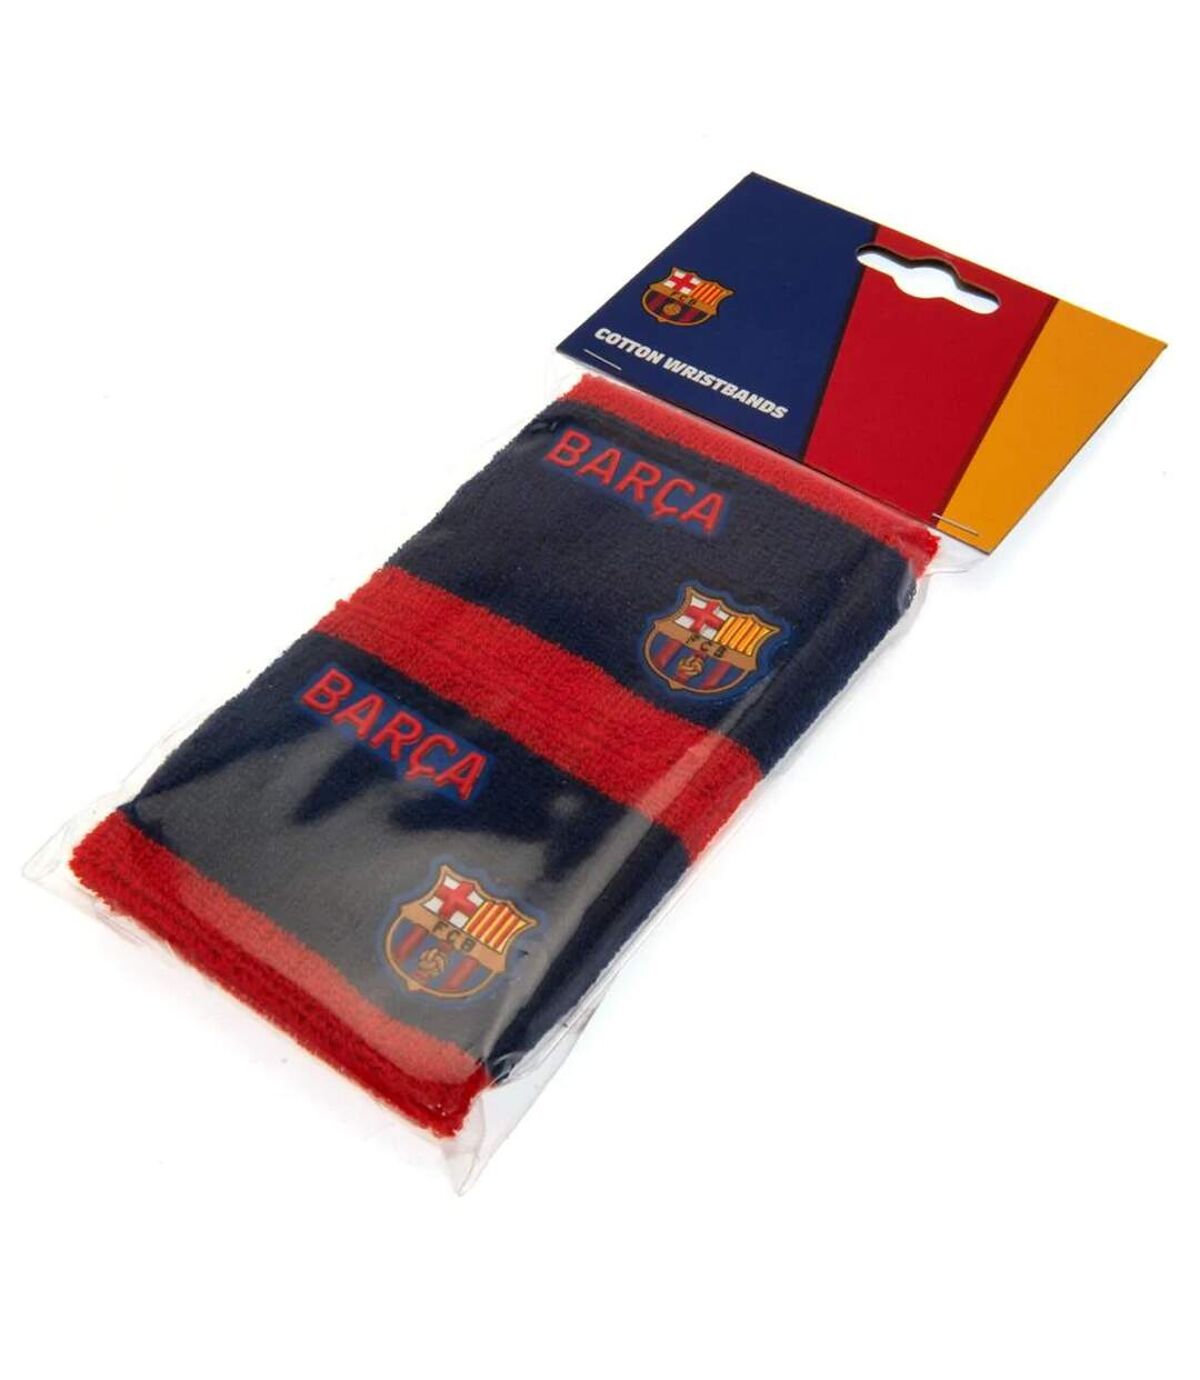 FC Barcelona Jeu de bracelets (lot de 2) (Rouge / bleu) (Taille unique) - UTTA7102